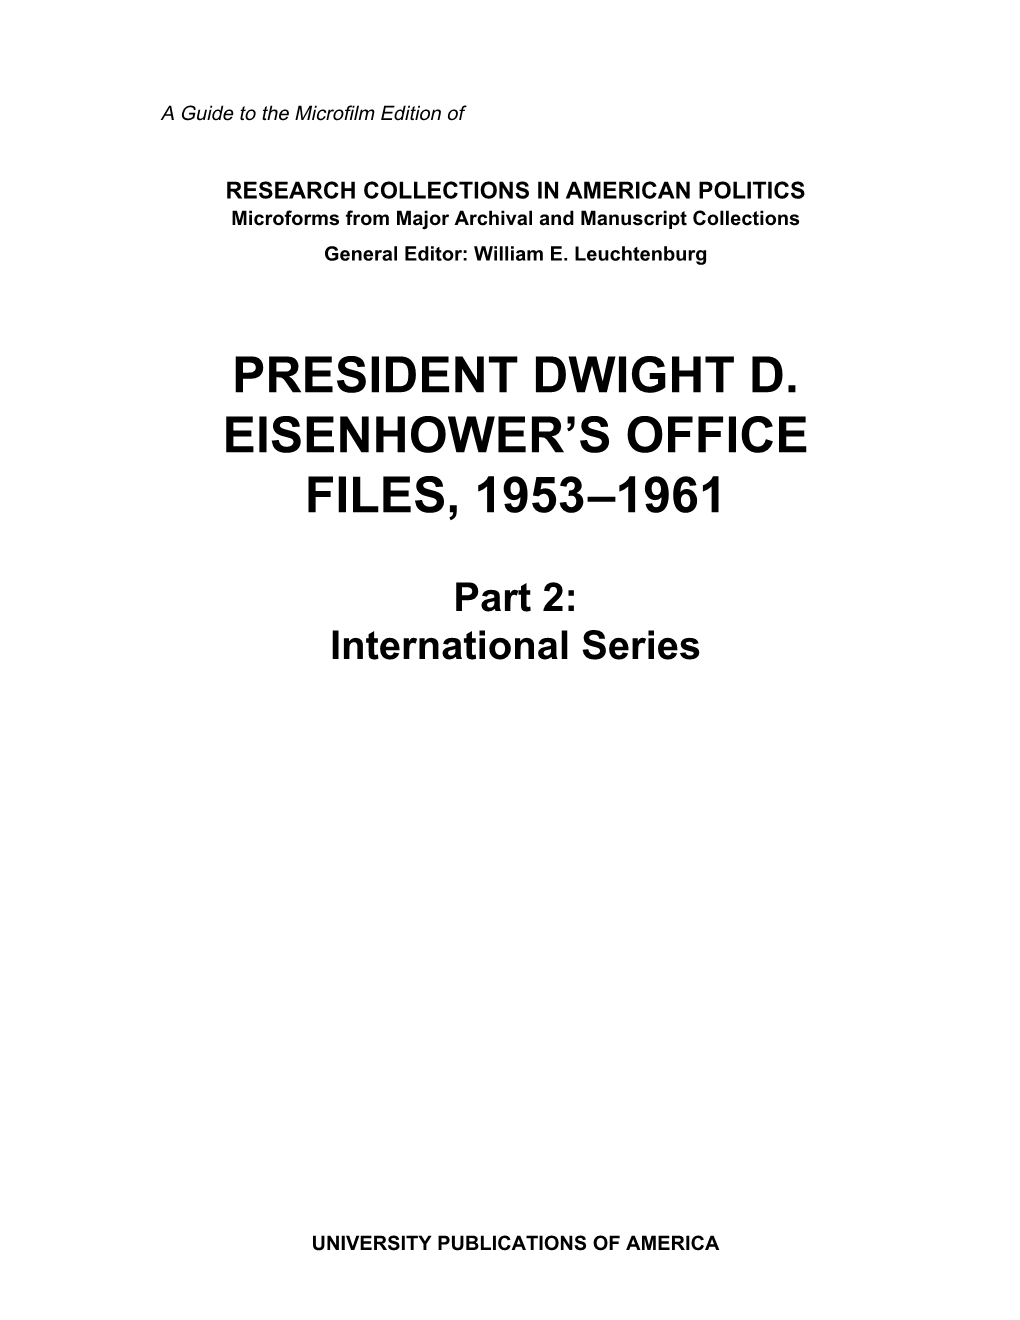 President Dwight D. Eisenhower's Office